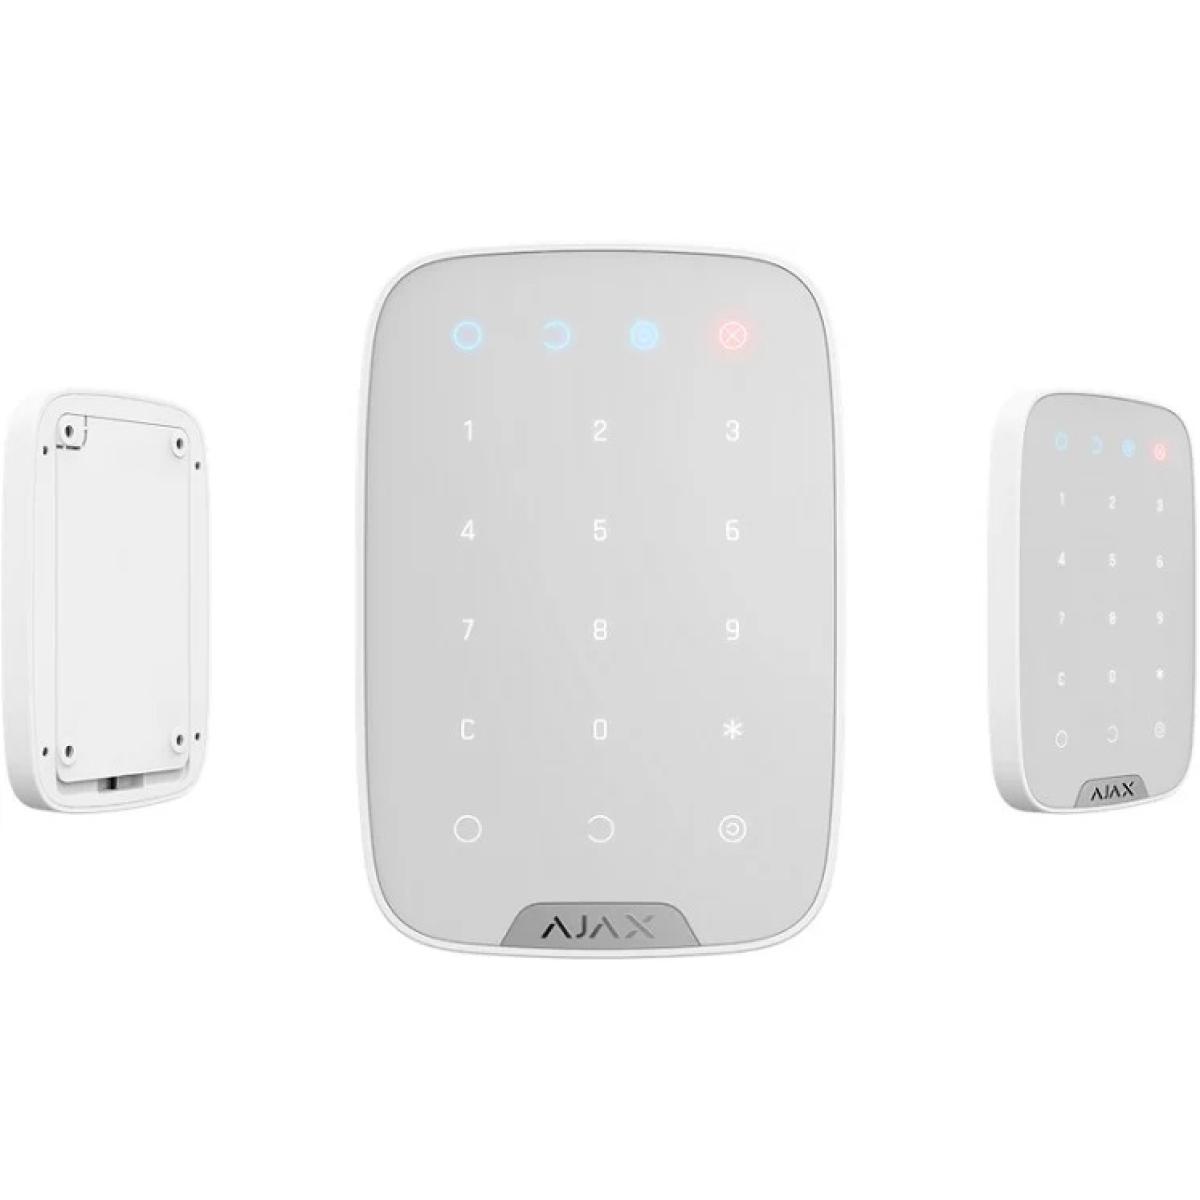 AJAX Keypad Plus- white